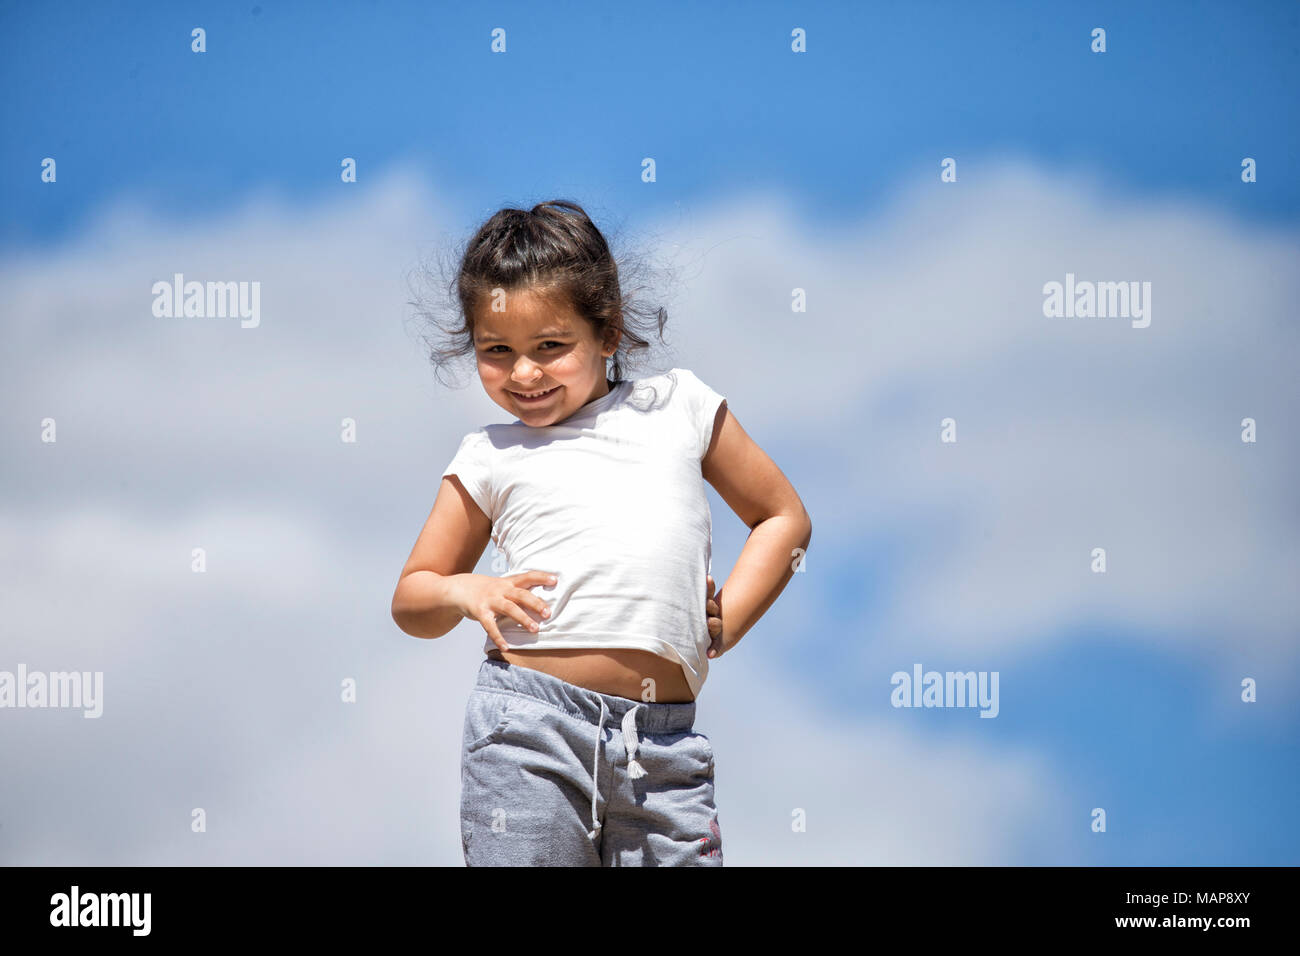 Low Angle View von einem kleinen Mädchen mit dem Himmel im Hintergrund Stockfoto